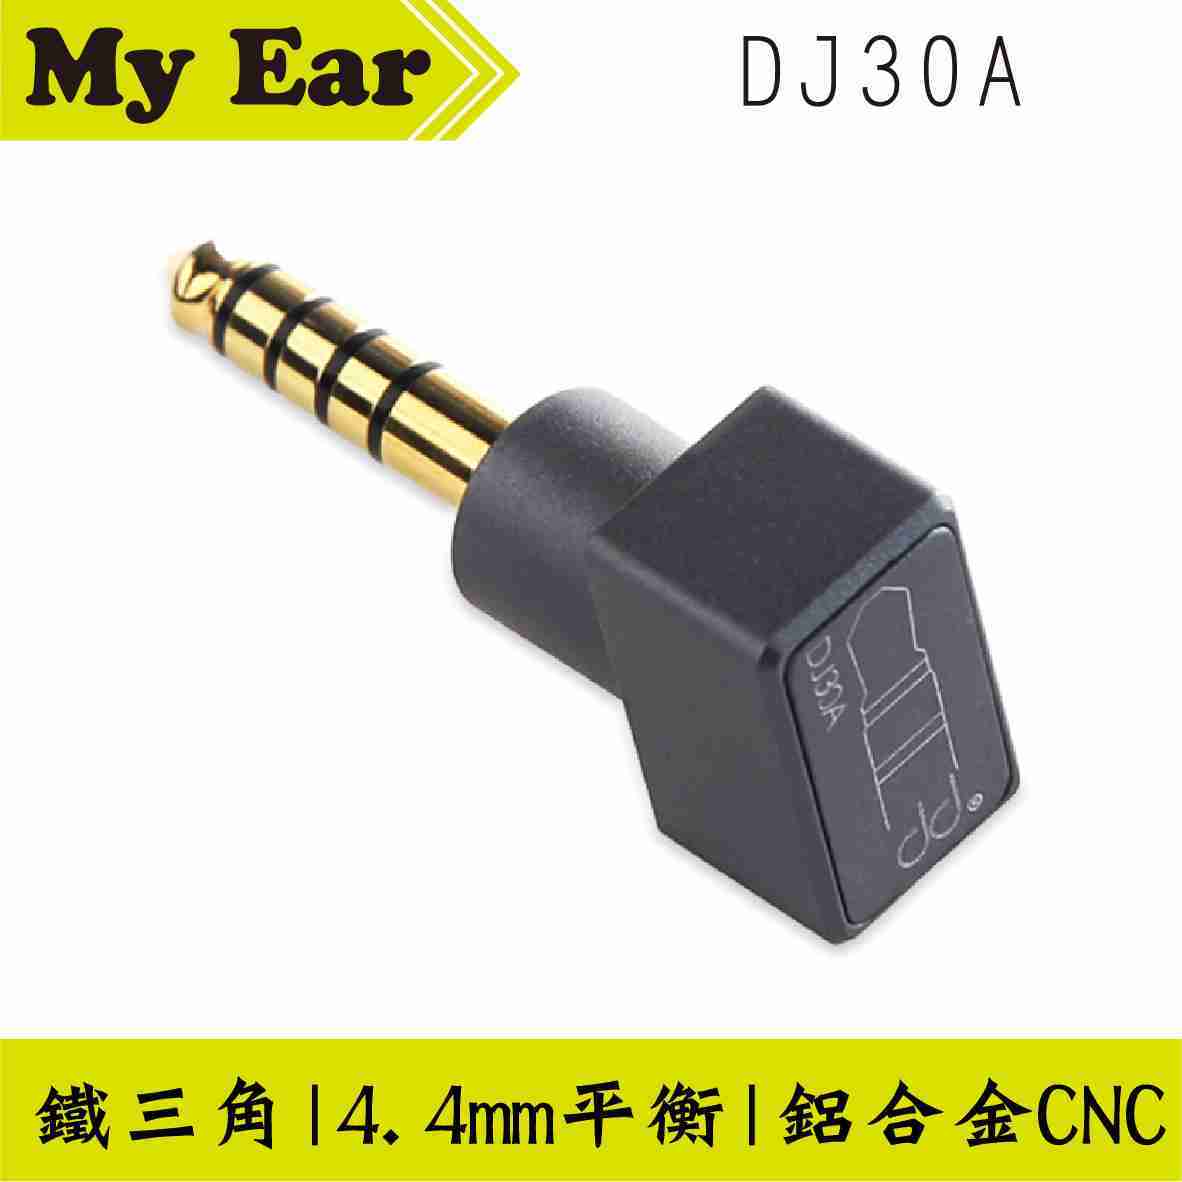 DD HiFi DJ30A 4.4mm 平衡 (公) 轉 3.5mm 單端 (母) 轉接頭 | My Ear耳機專門店